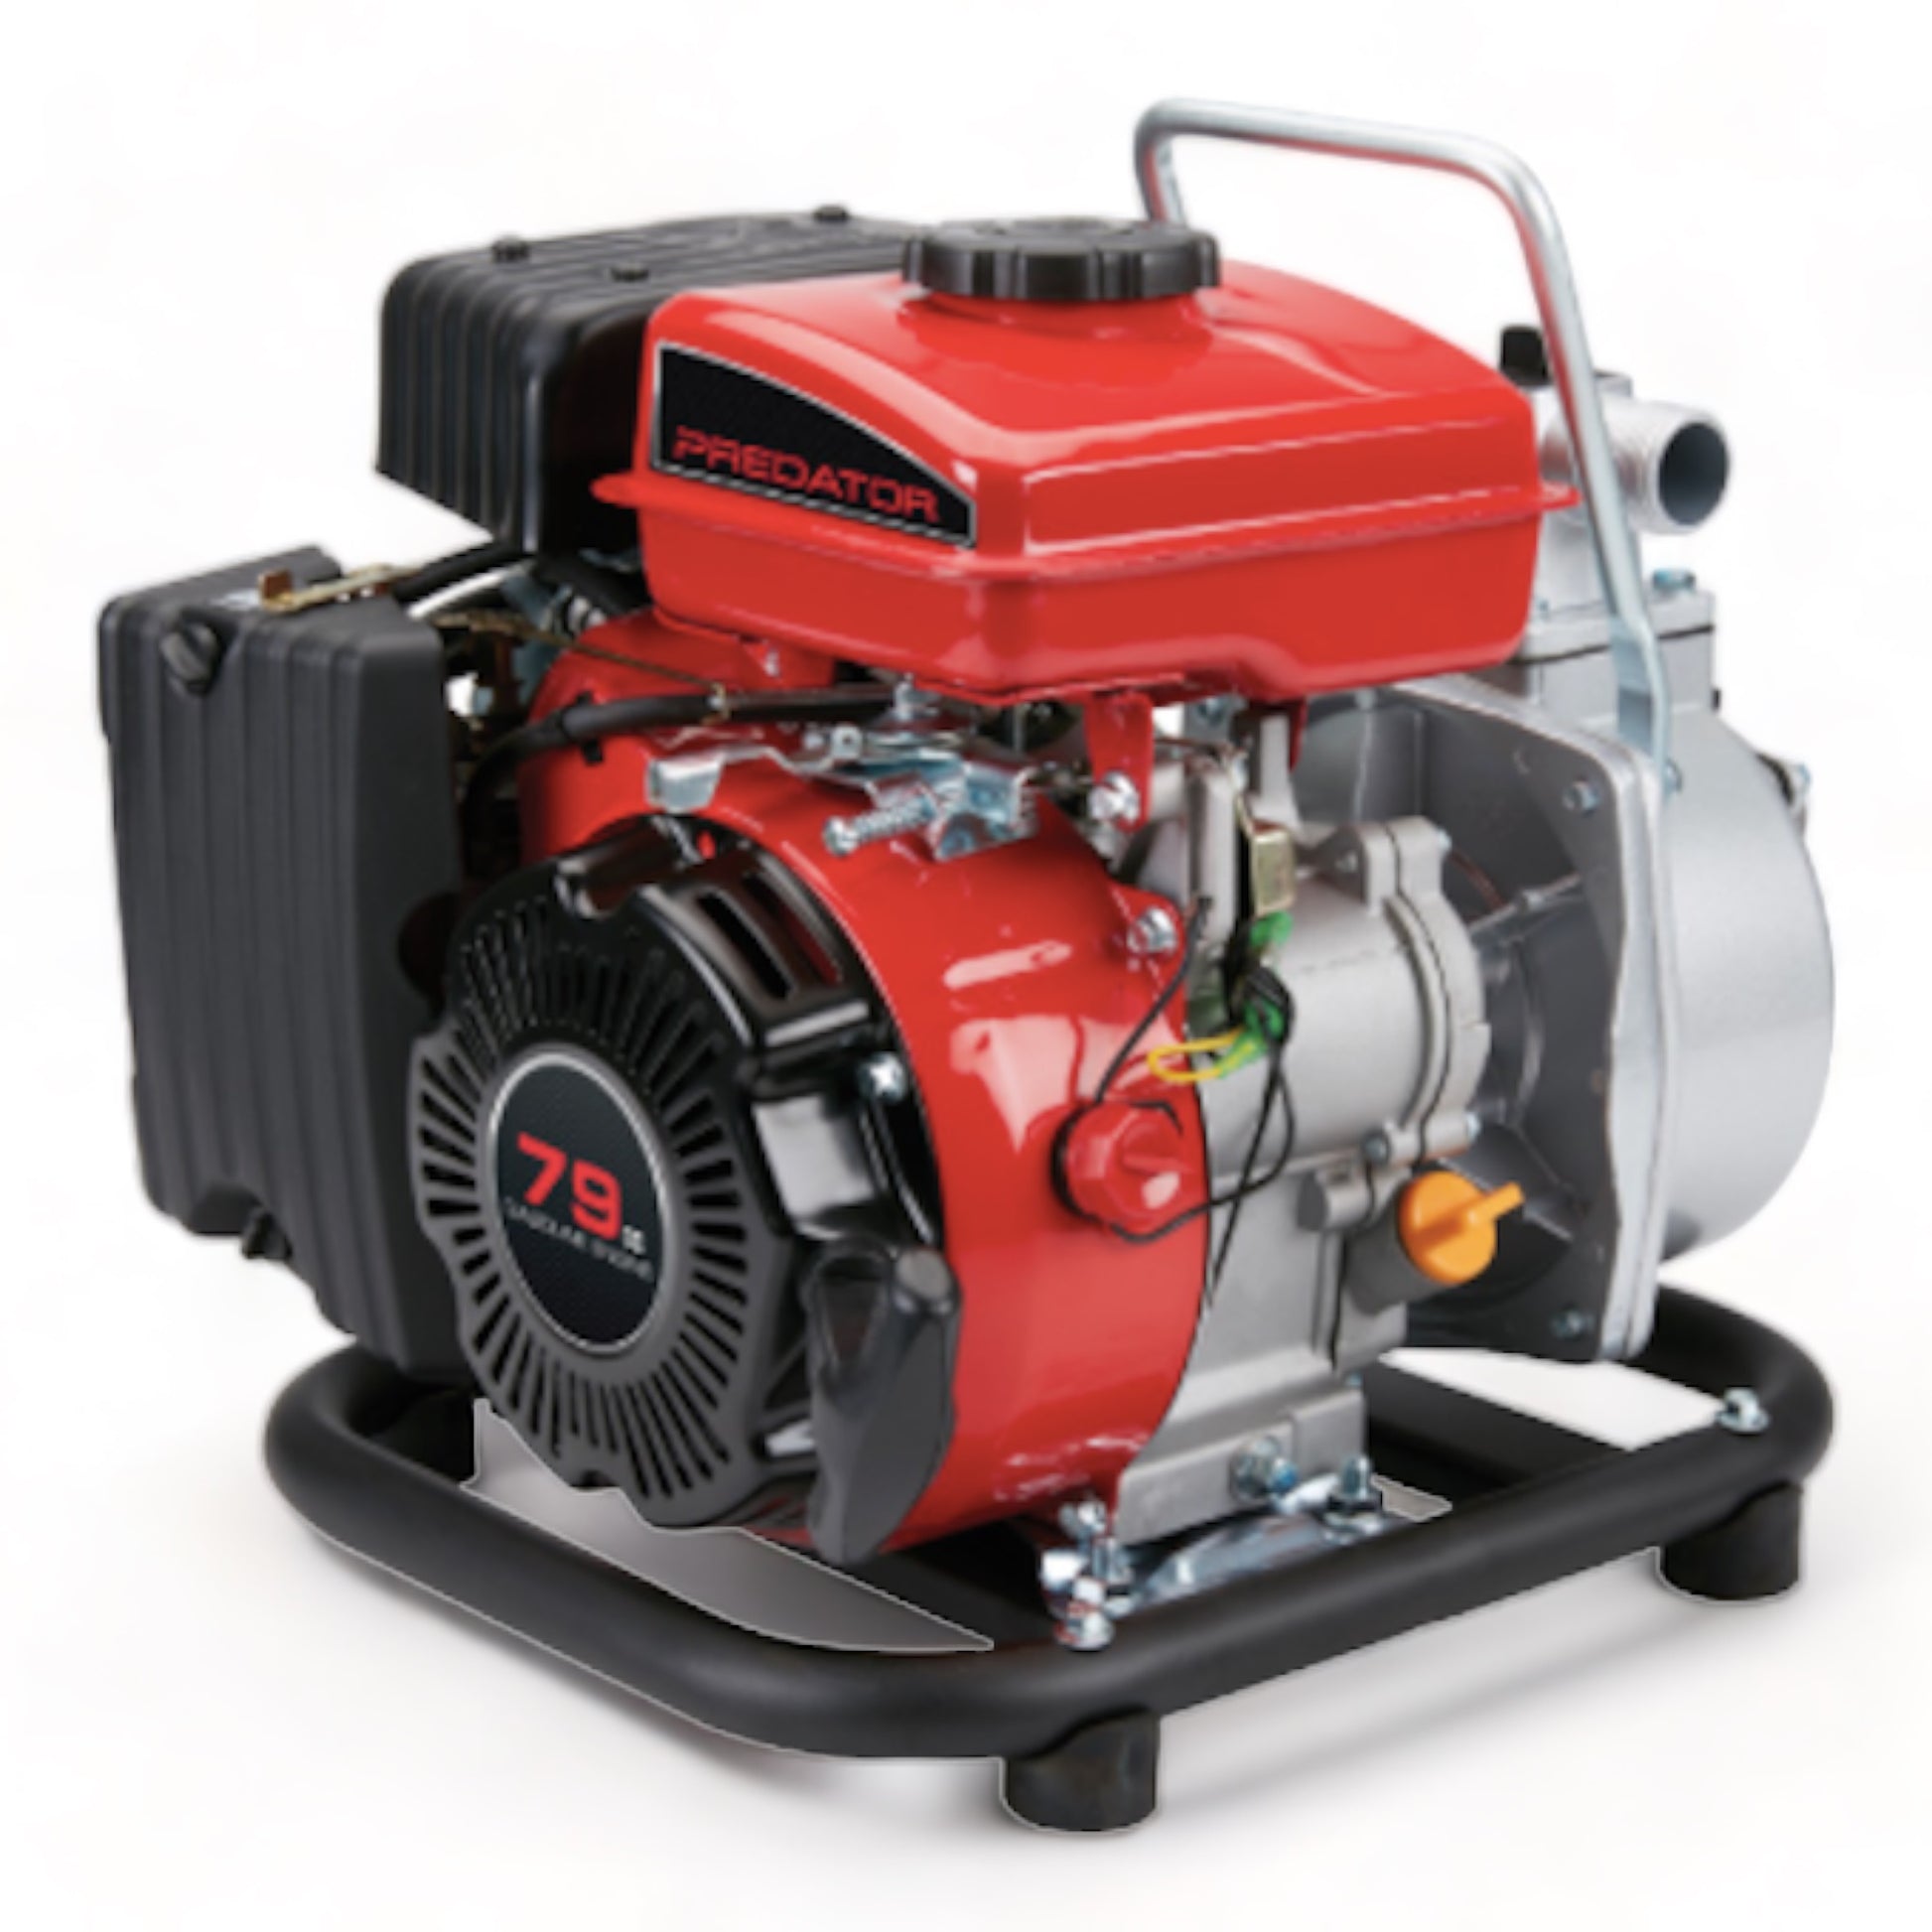 CWP79 - 1 英寸 79cc 汽油发动机清水泵 - 35 GPM